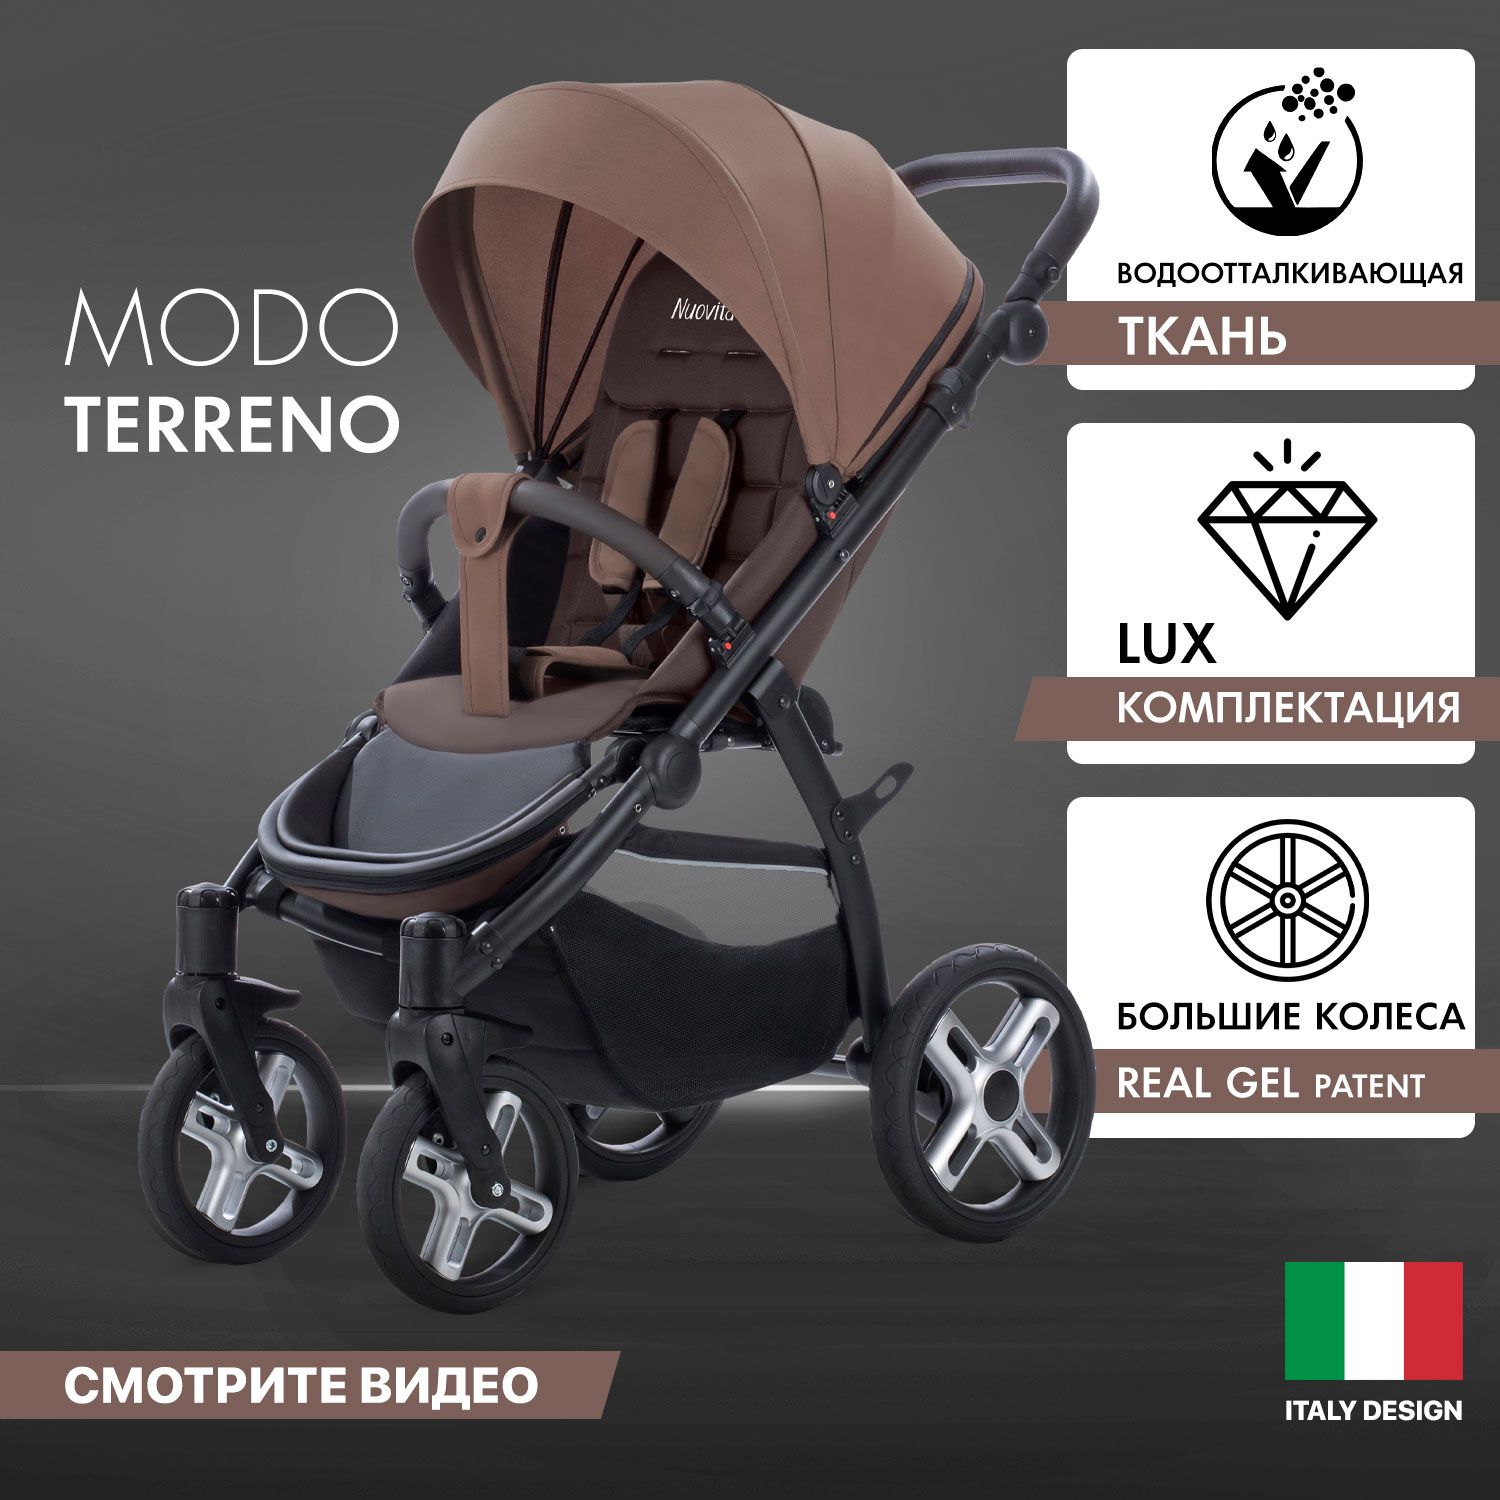 Прогулочная коляска Nuovita Modo Terreno Marrone scuro/Темно-коричневый накидка массажер на сиденье 126×43 см с поясничной опорой коричневый